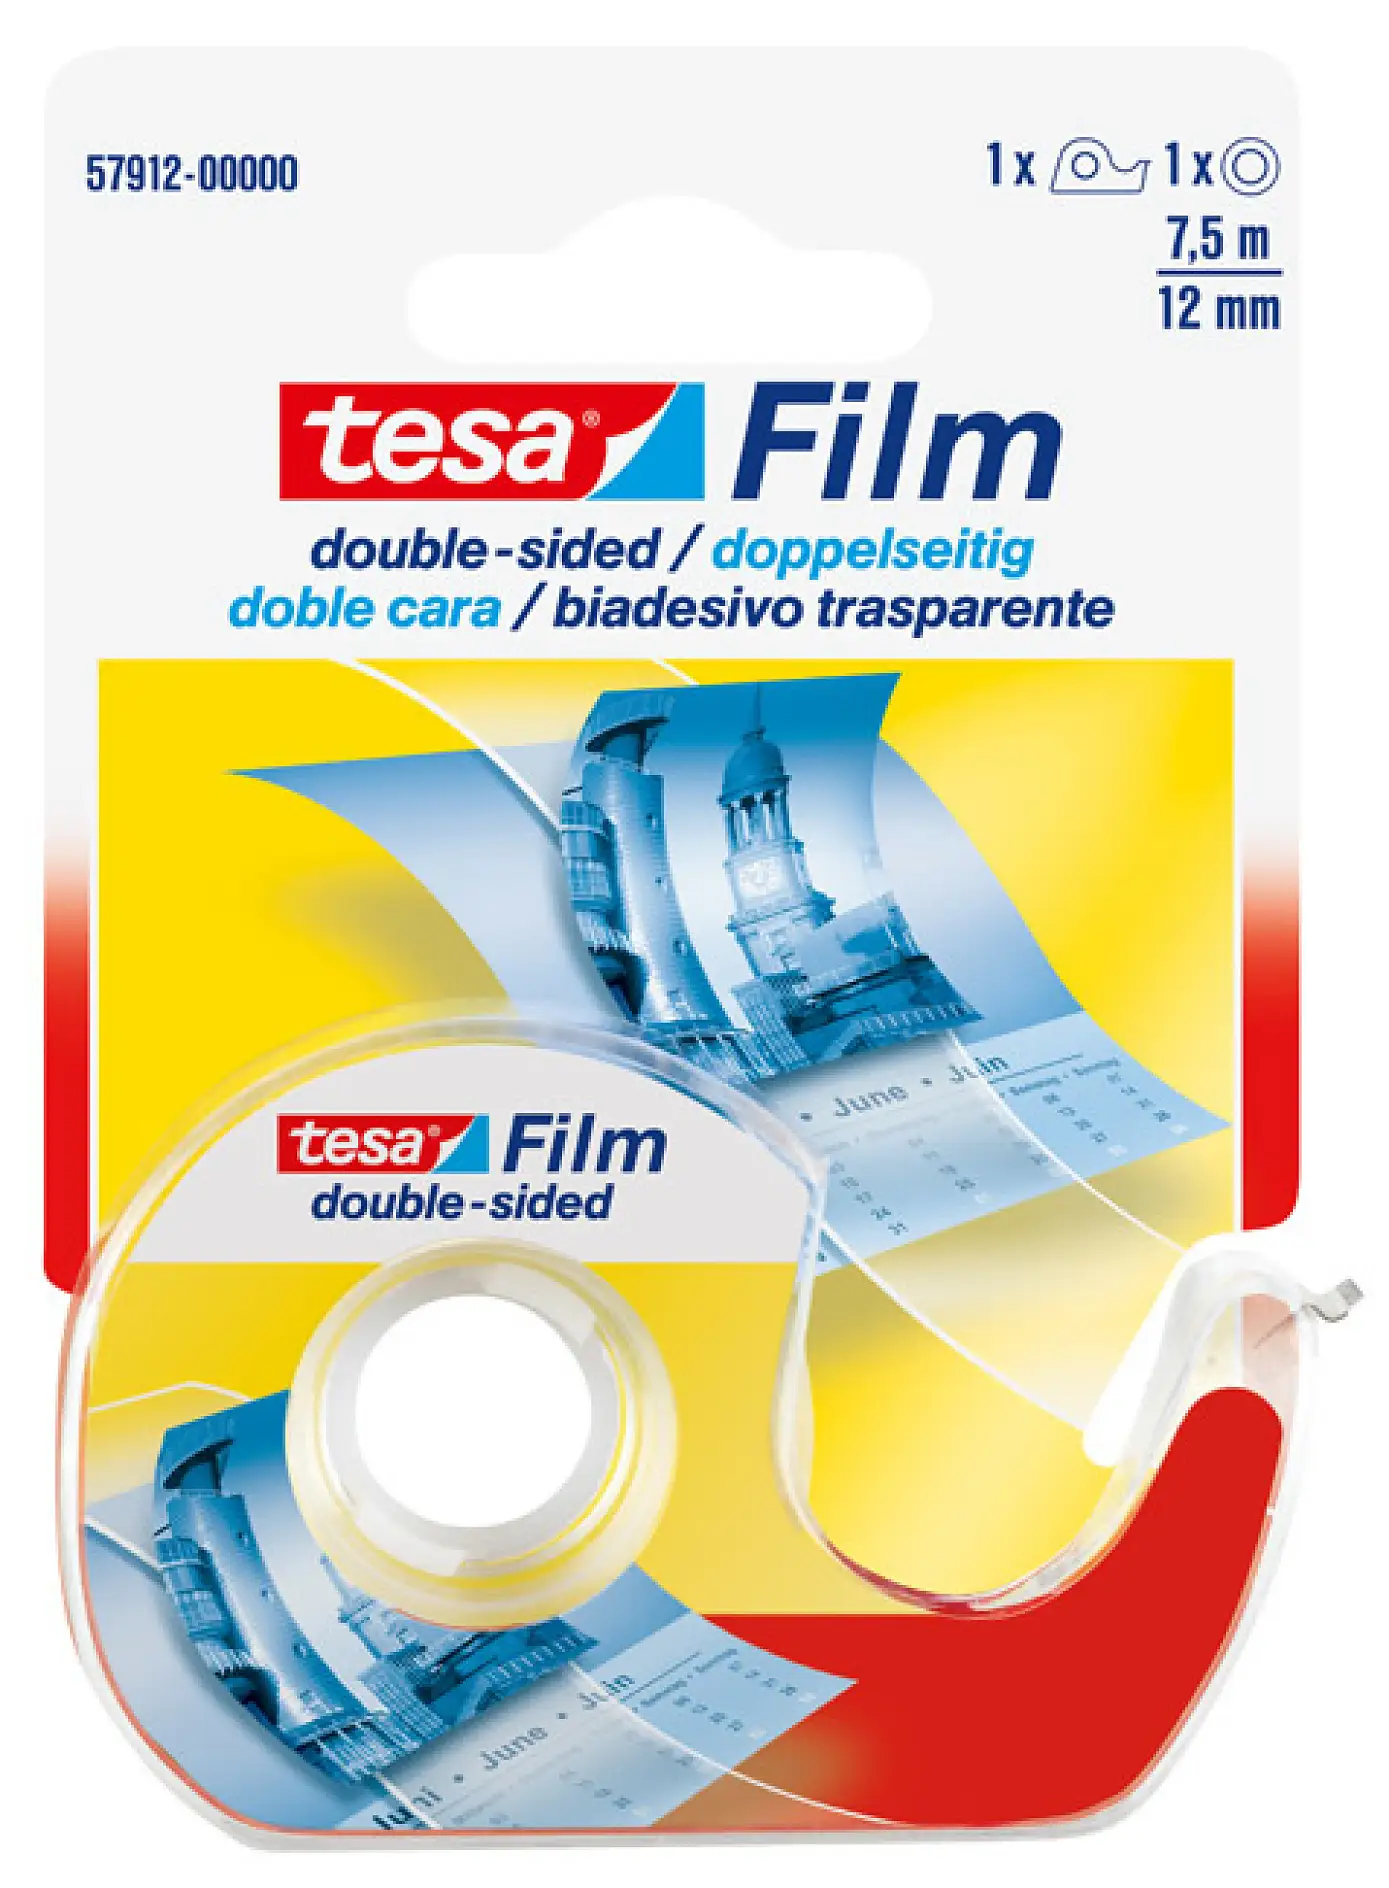 57912-00000
4042448899743
tesa Film double-sided Abroller und 1x7,5m:12mm